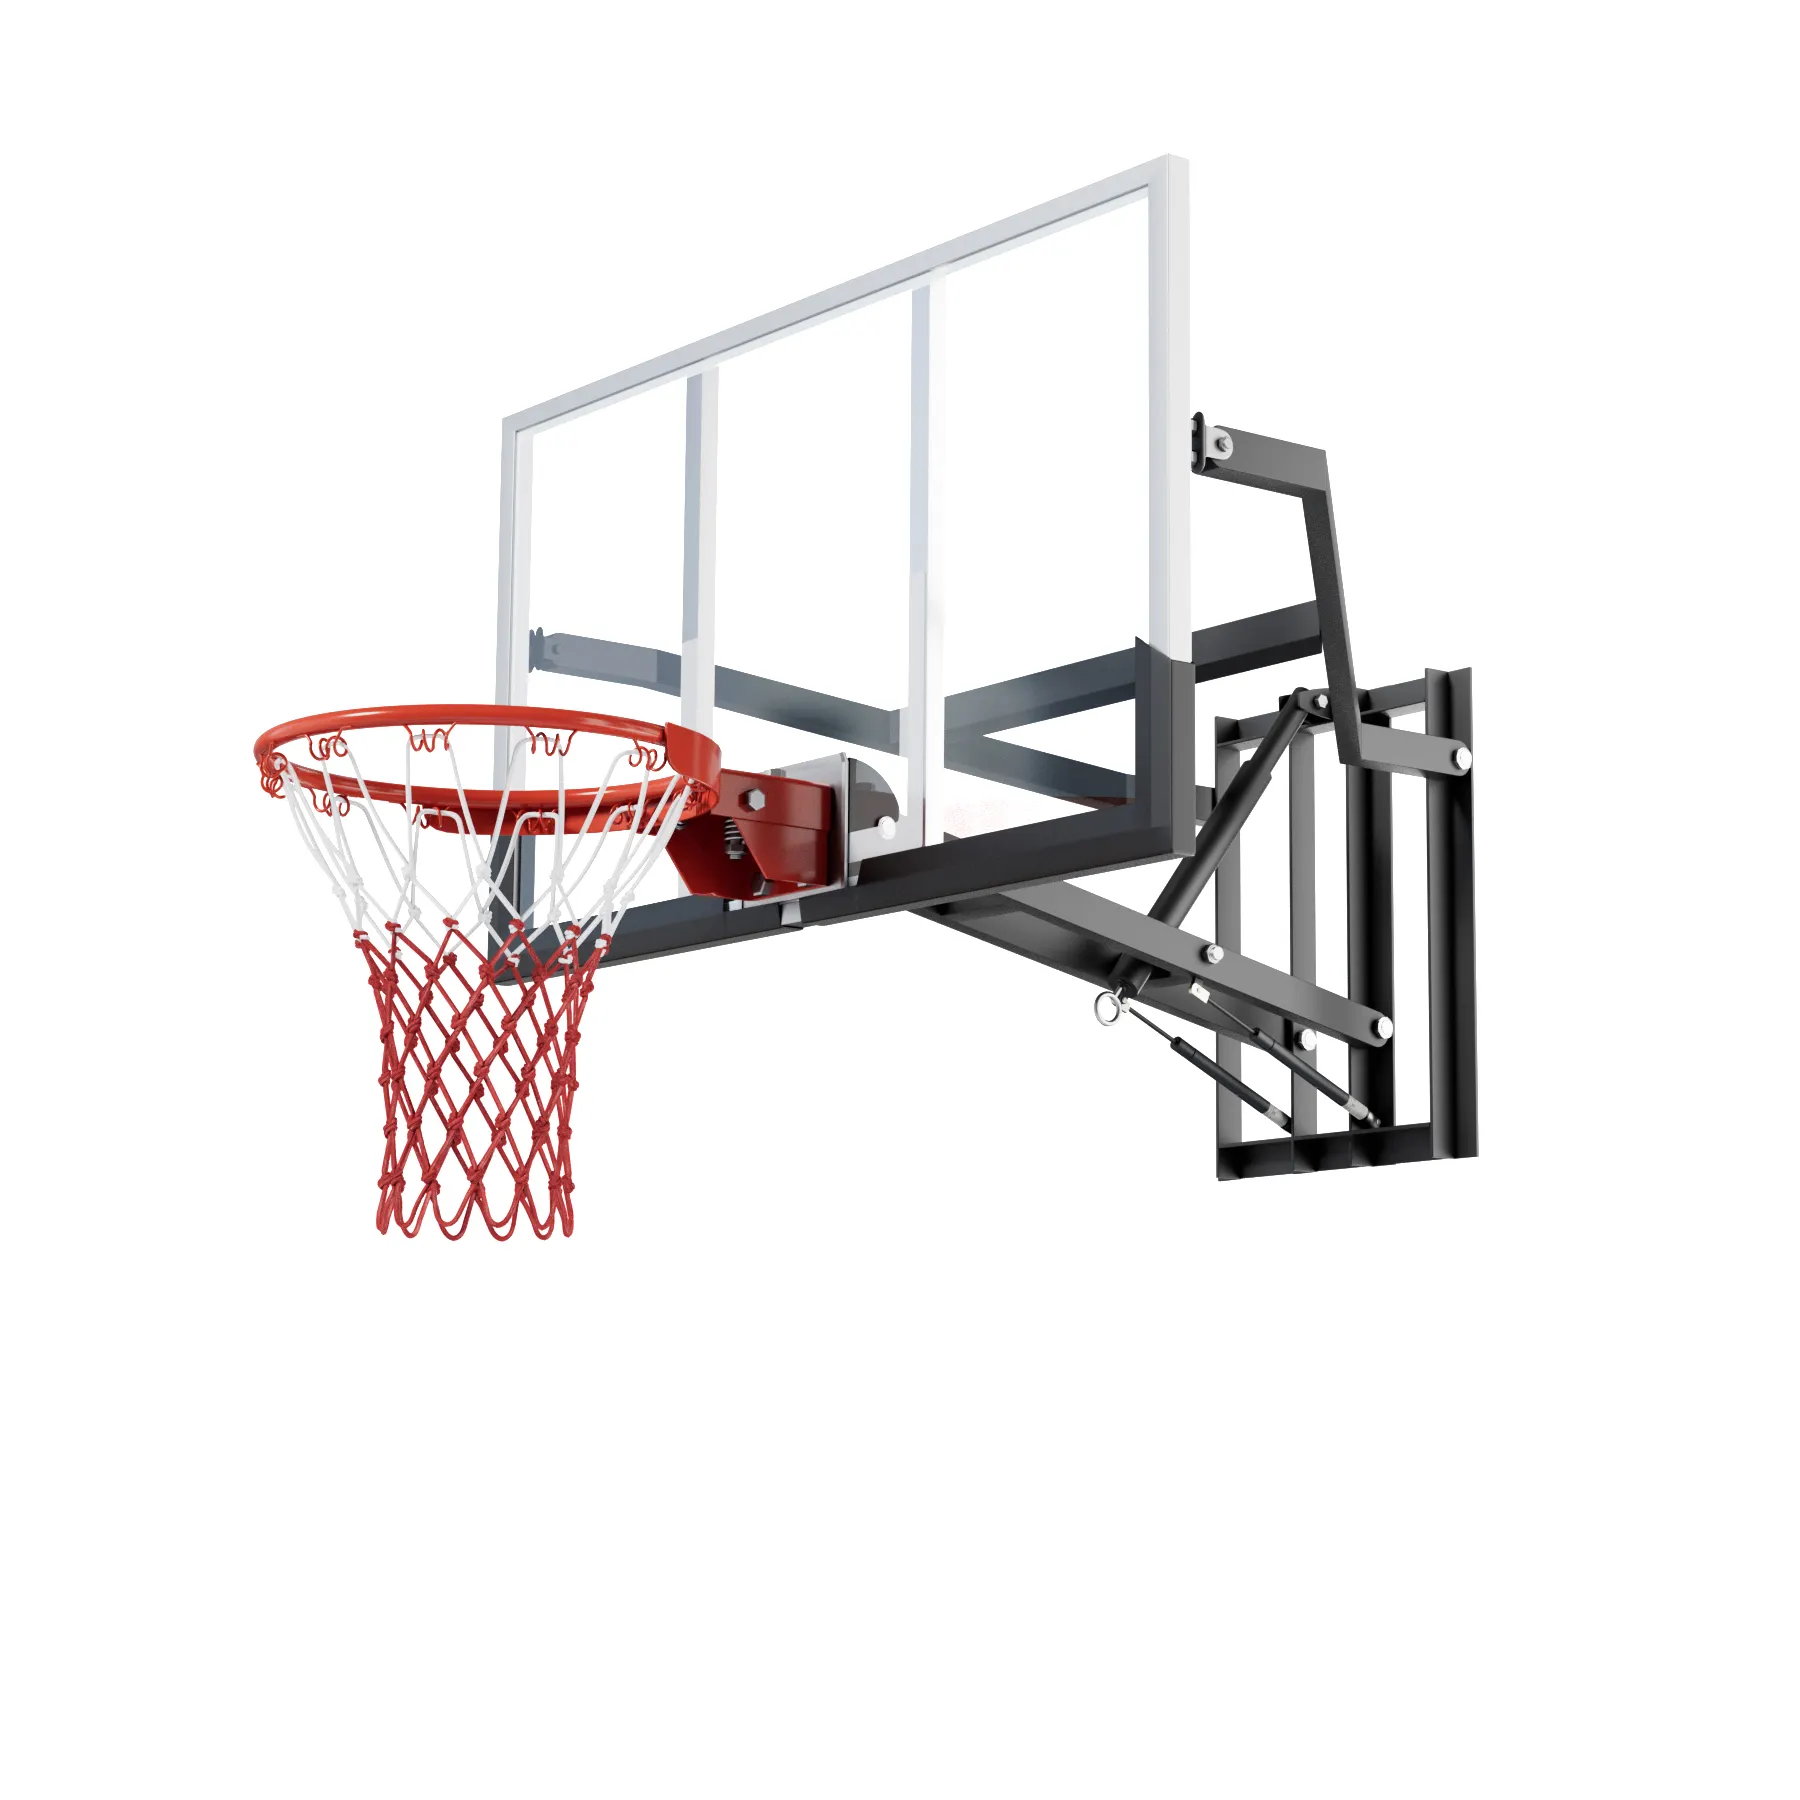 Cavalletto da basket a manovella per sollevamento a parete regolabile in altezza e fisso con Design QuickPlay